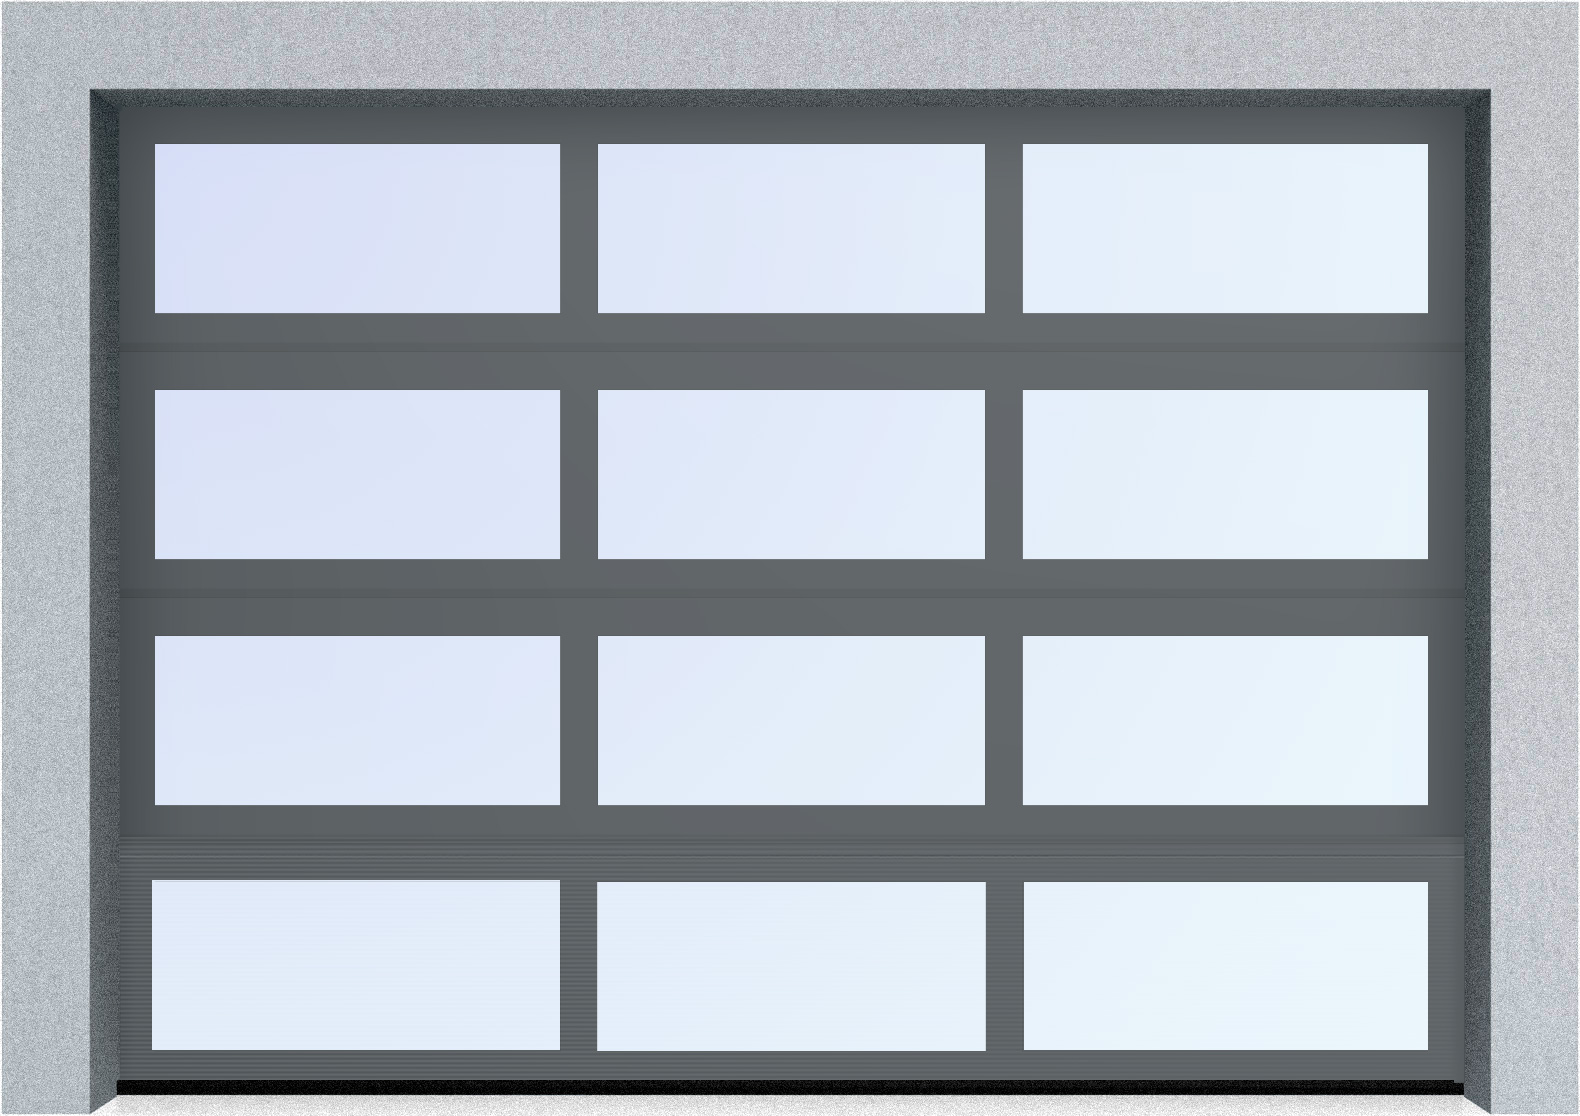  Секционные панорамные ворота серии AluTrend (АЛП) 6500х5500 нижняя панель стандартные цвета, фото 5 